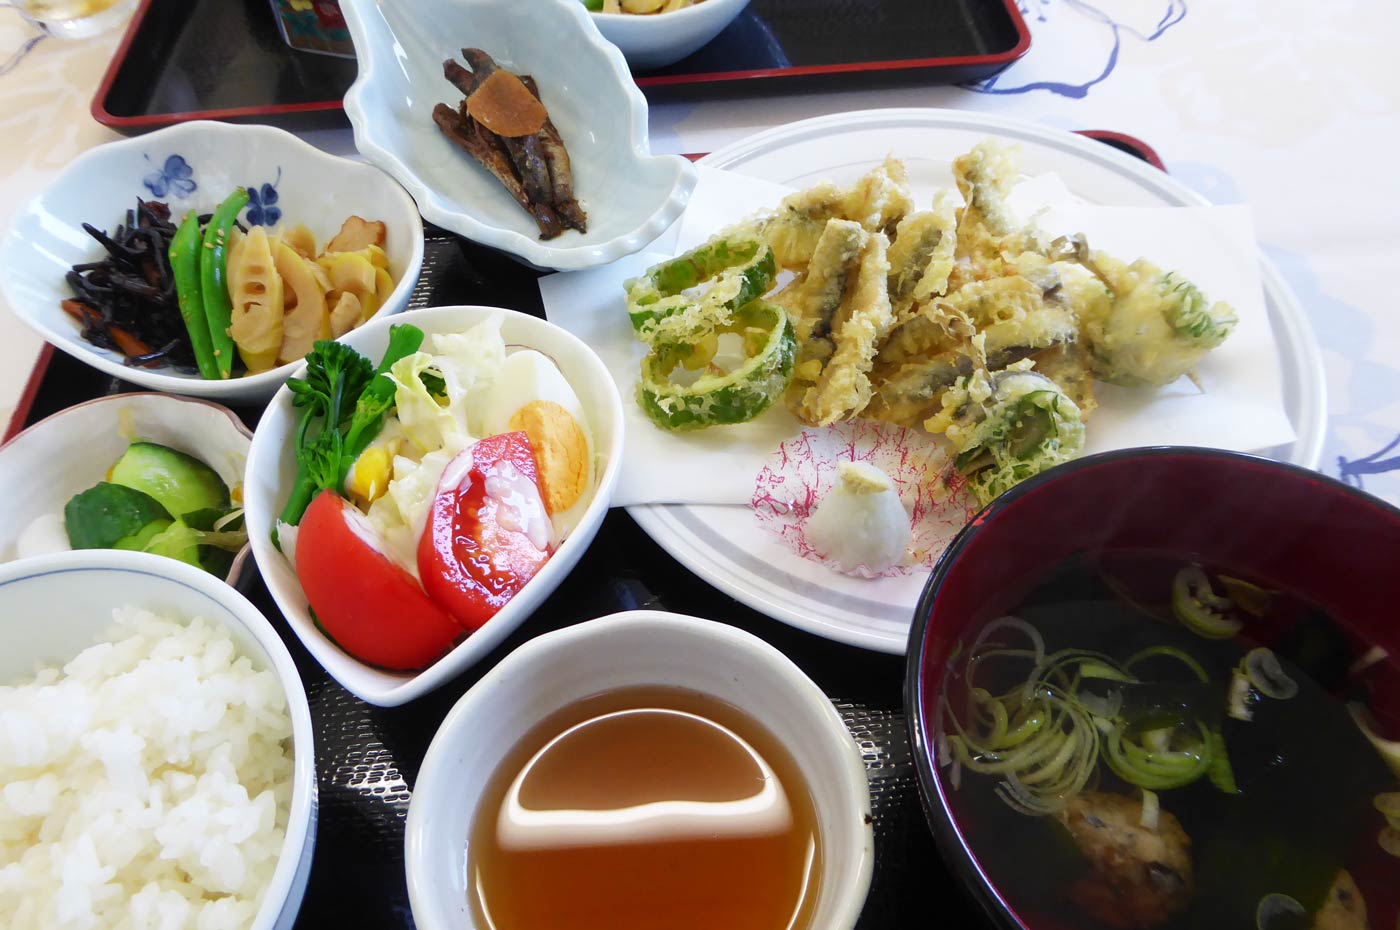 天ぷら定食の画像